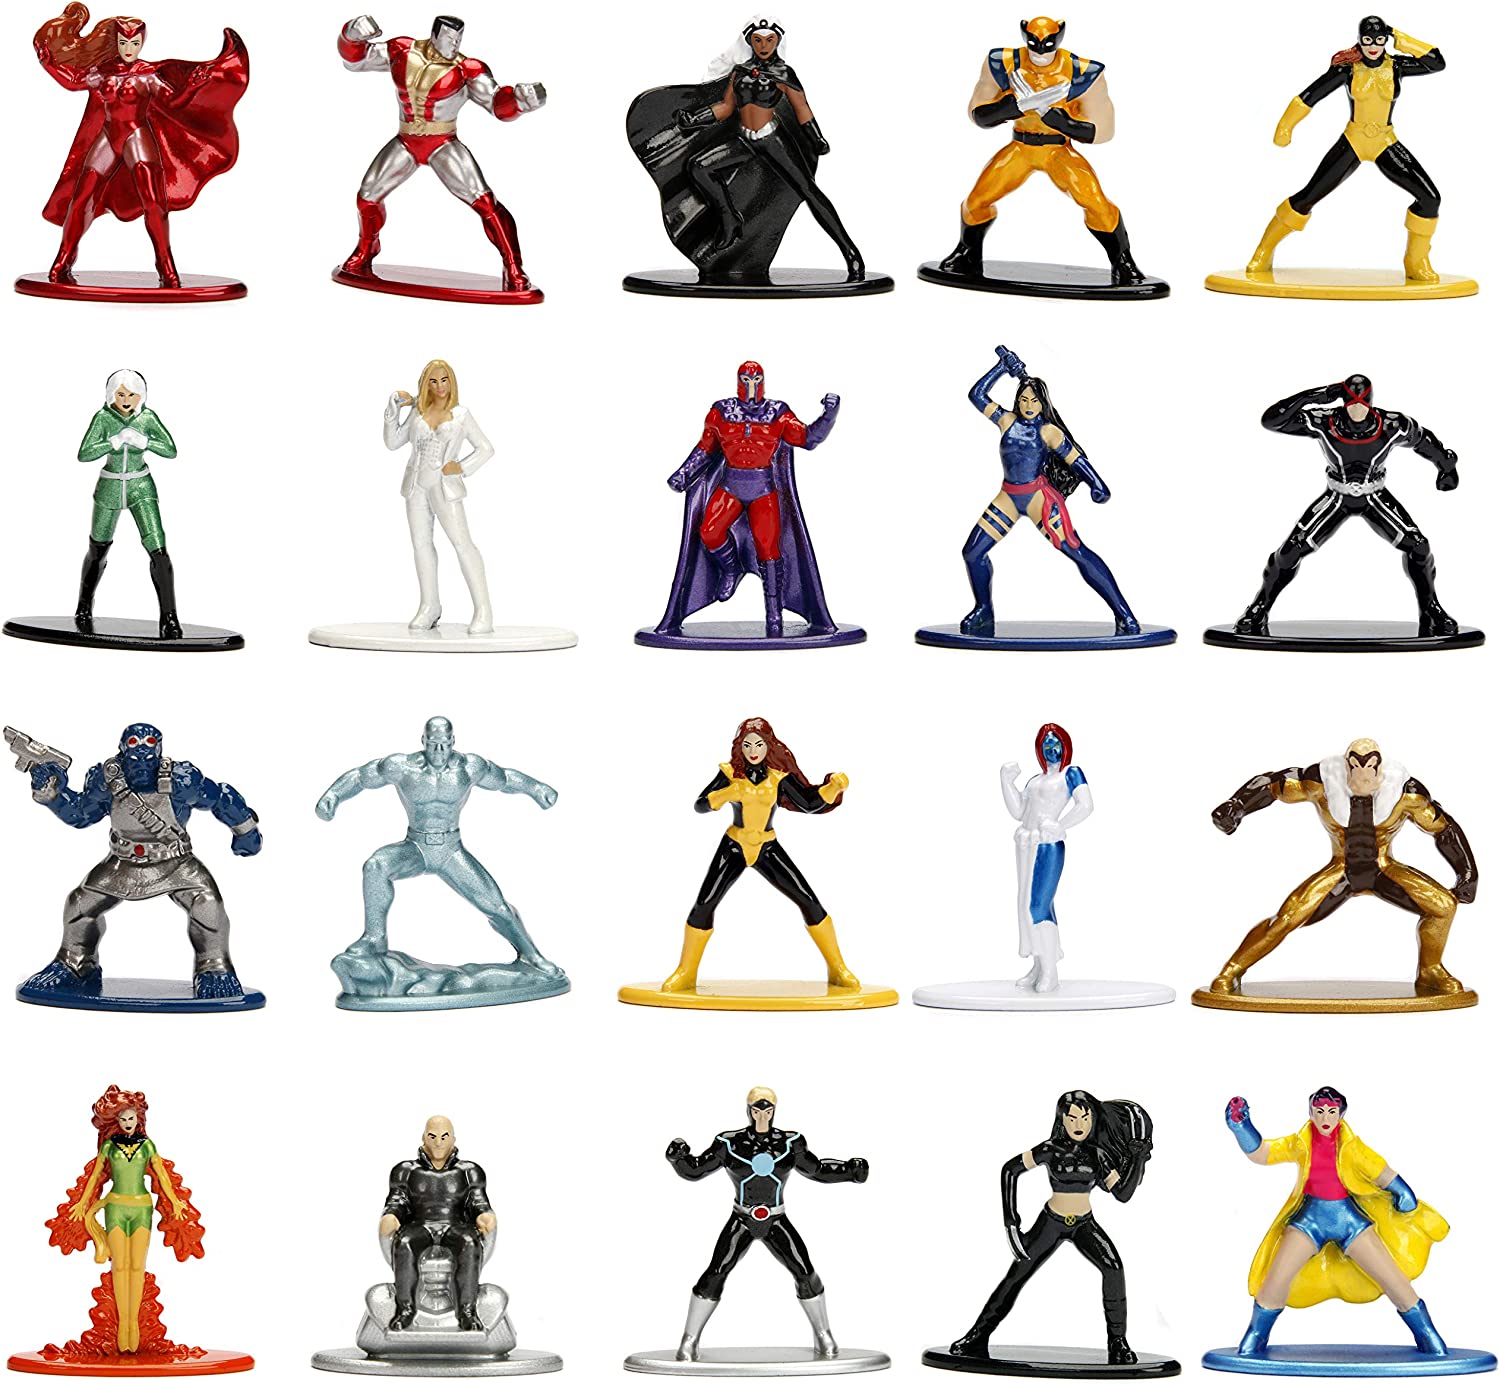 X-Men Marvel Nano Metalfigs Die-Cast Metal Mini-Figures 20-Pack